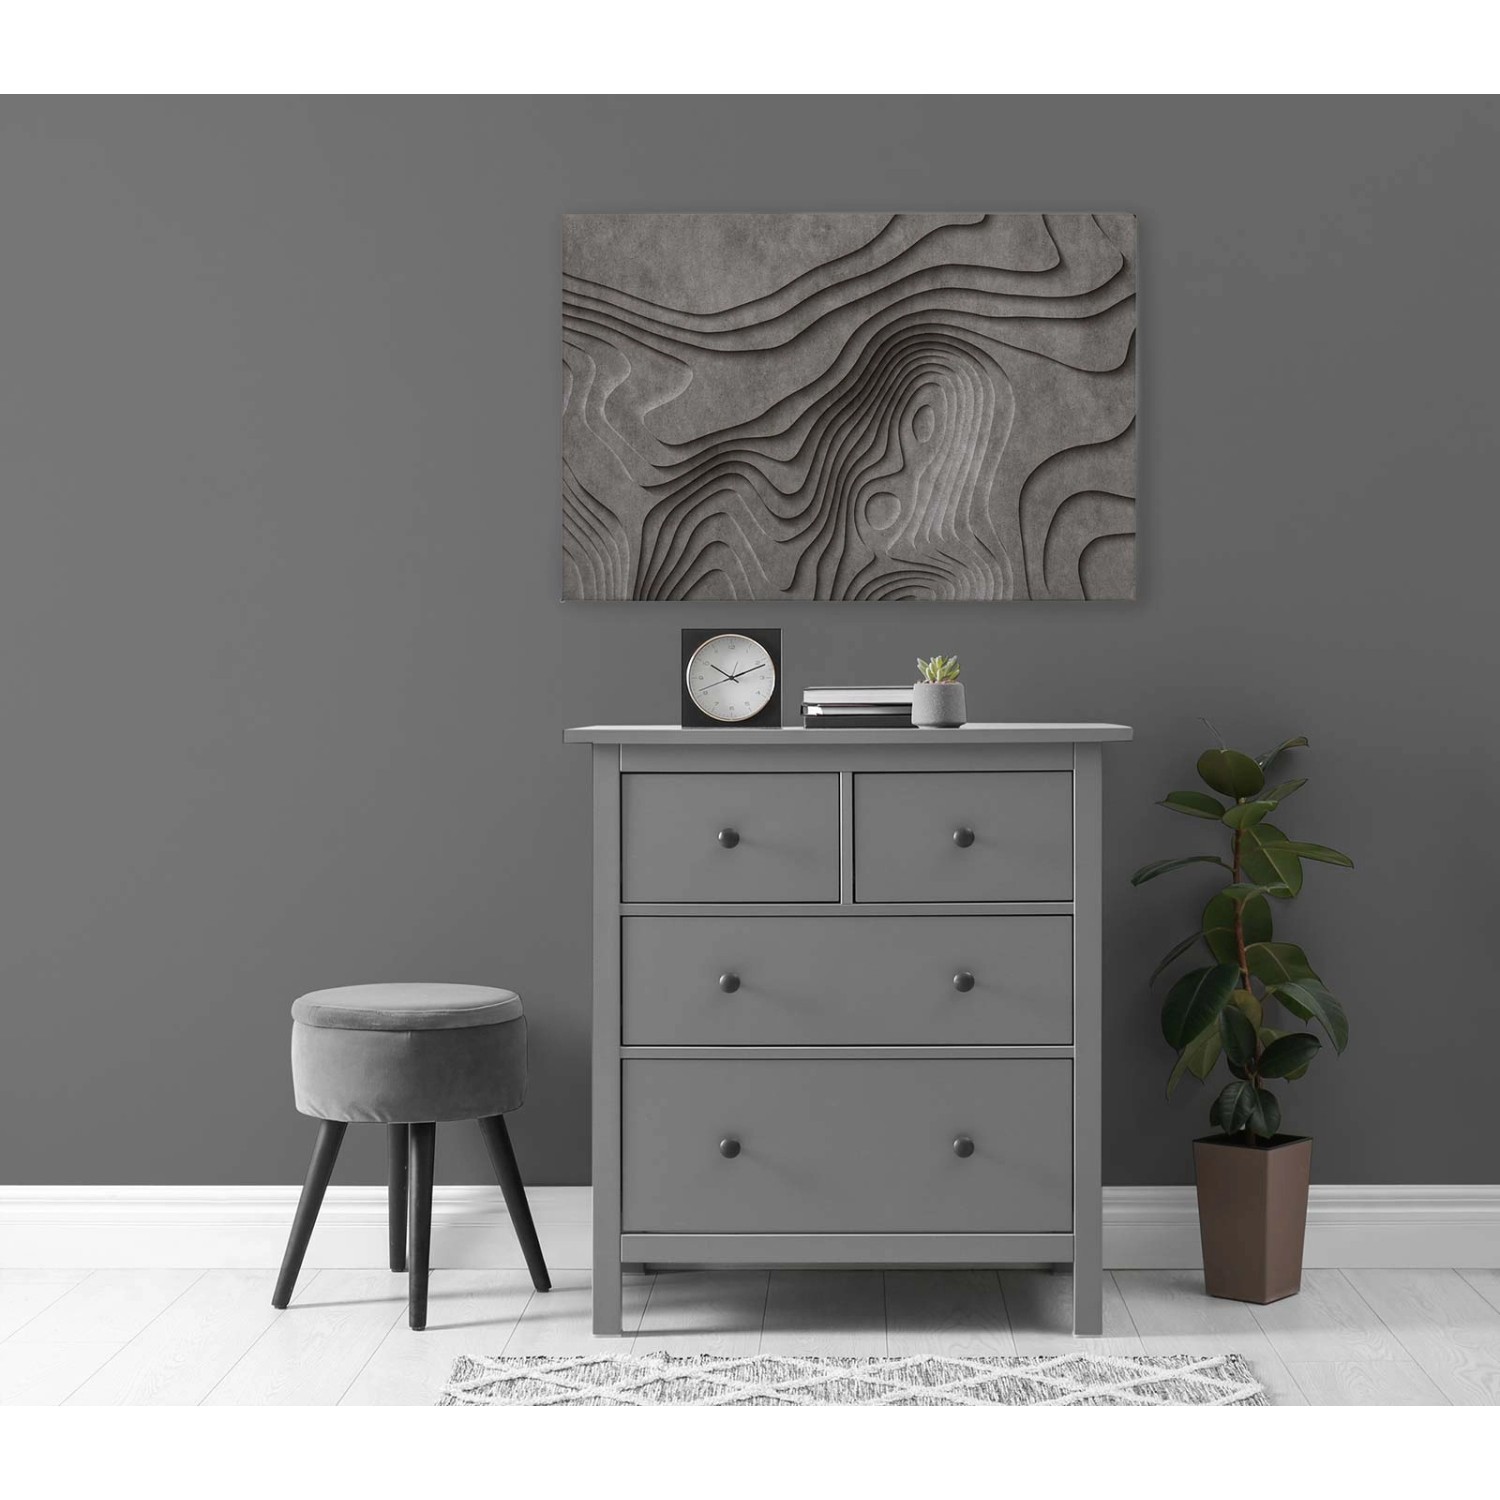 Bricoflor 3D Bild In Betonoptik Ideal Für Wohnzimmer Und Büro Modernes Wandbild Grau Leinwandbild Mit Canyon In 120 X 80